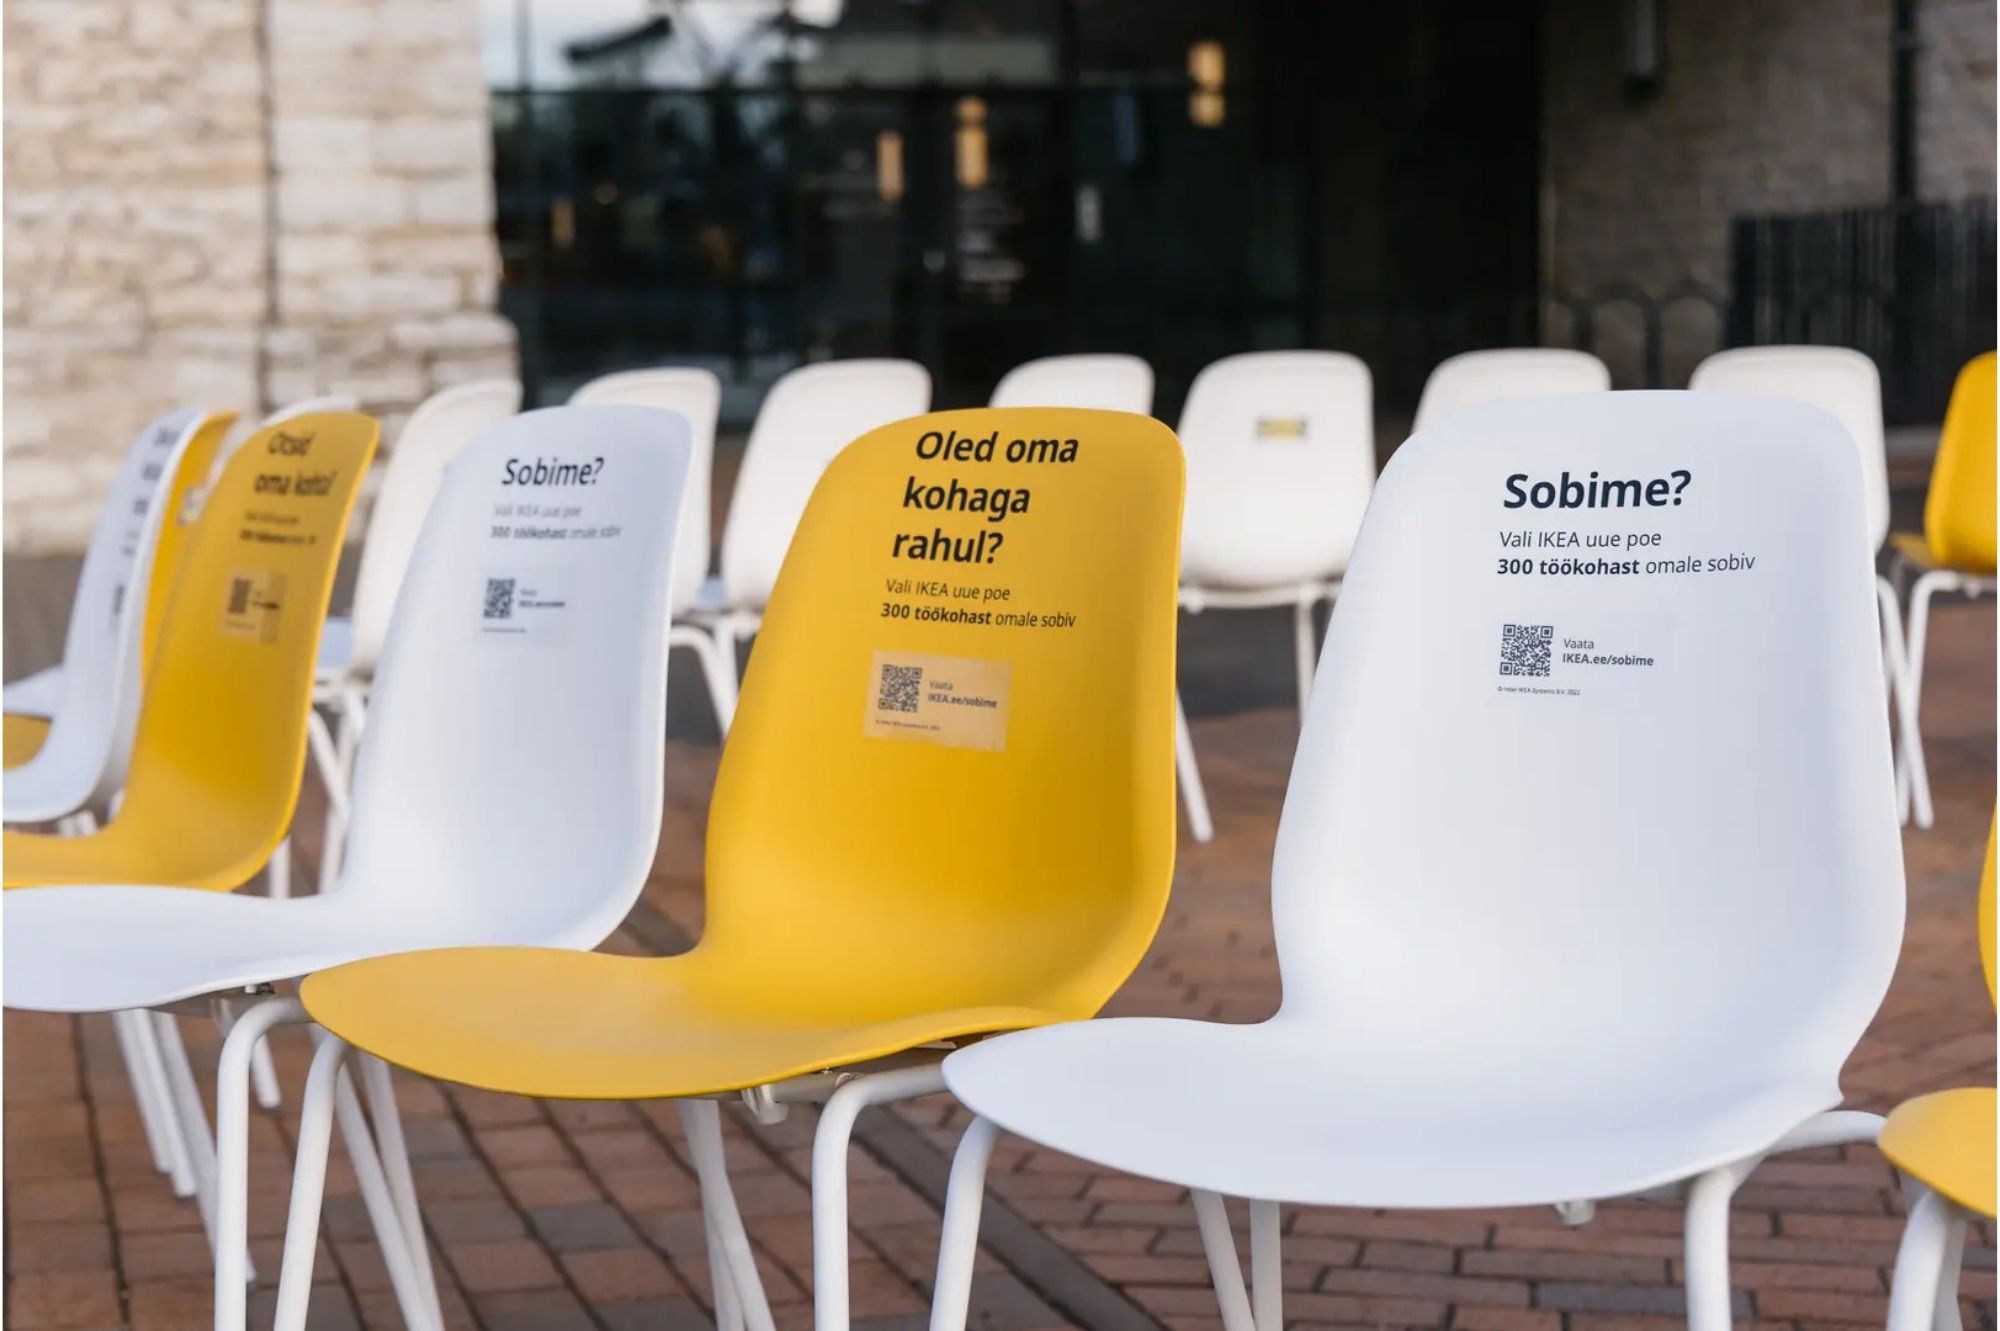 Рекламные стулья IKEA перед зданием рынка на Балтийском вокзале. Автор фото: IKEA.